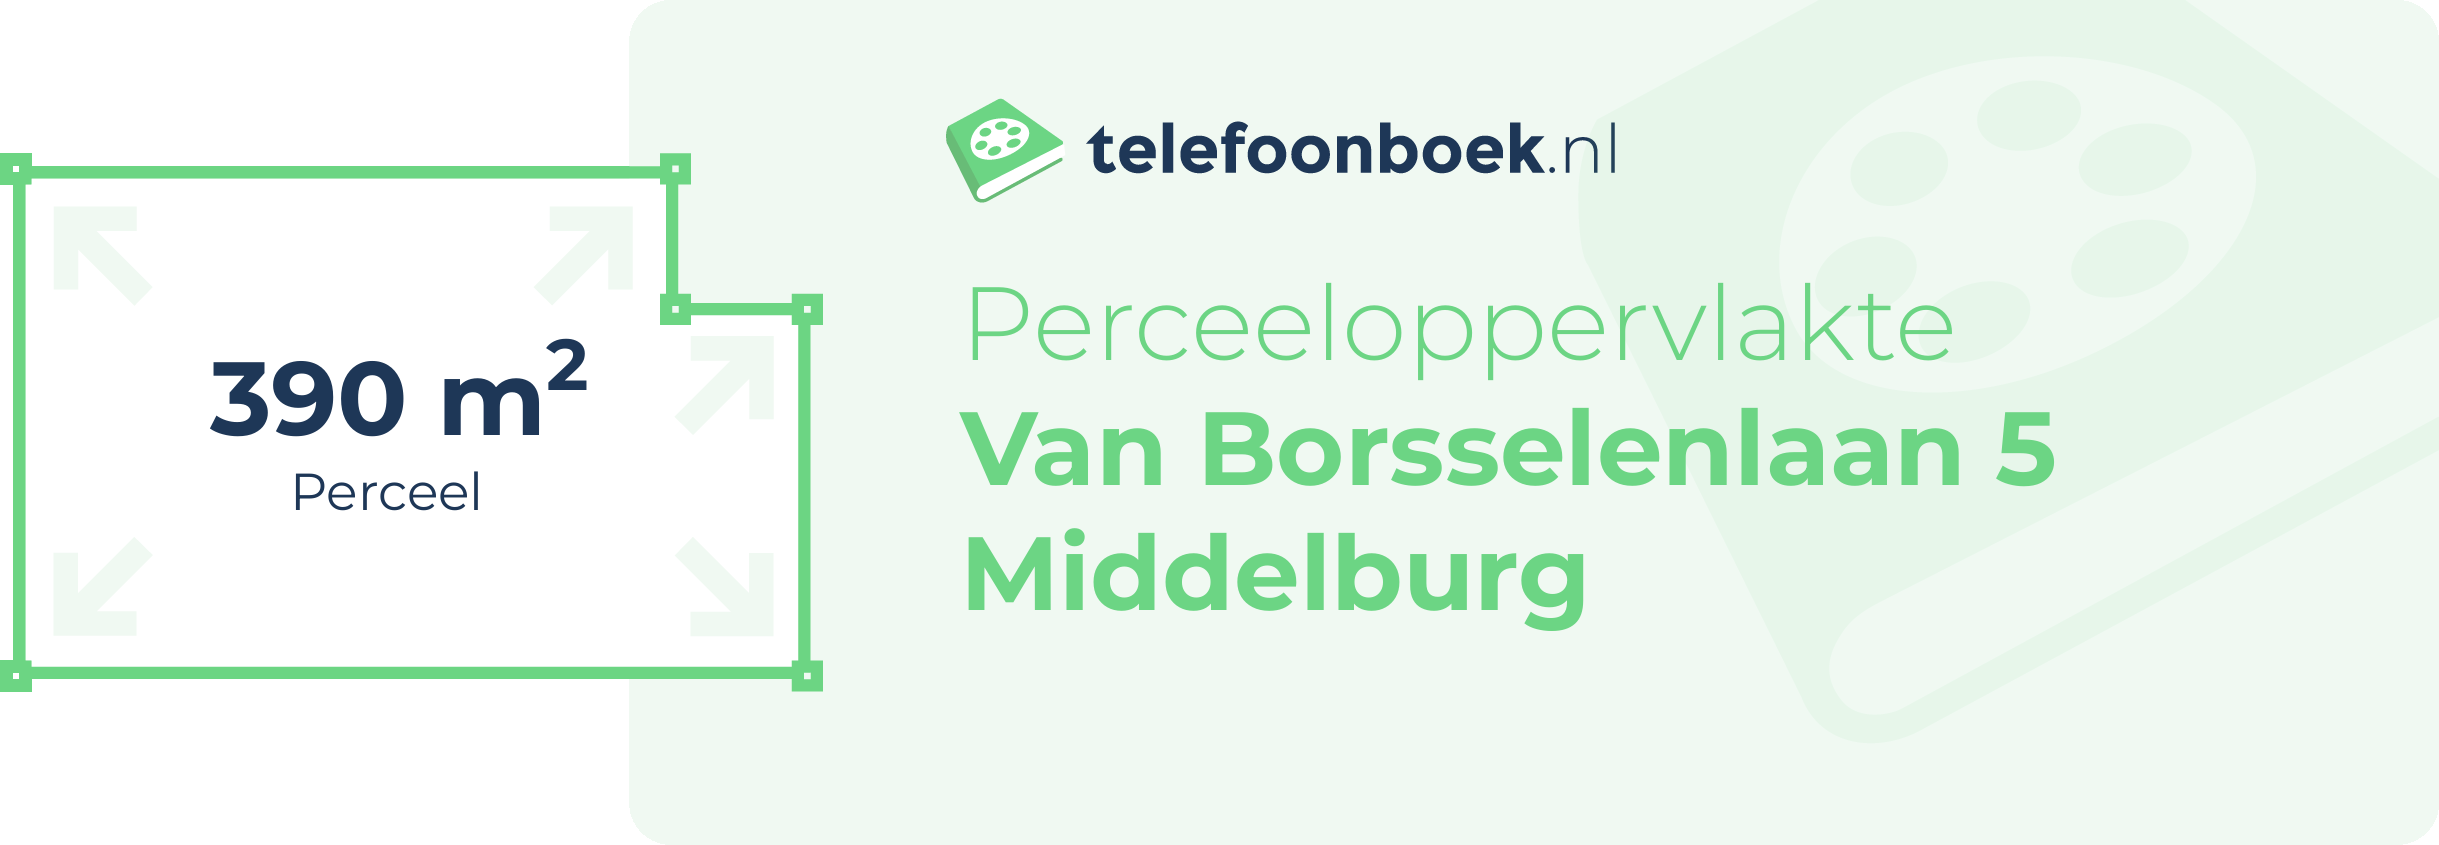 Perceeloppervlakte Van Borsselenlaan 5 Middelburg